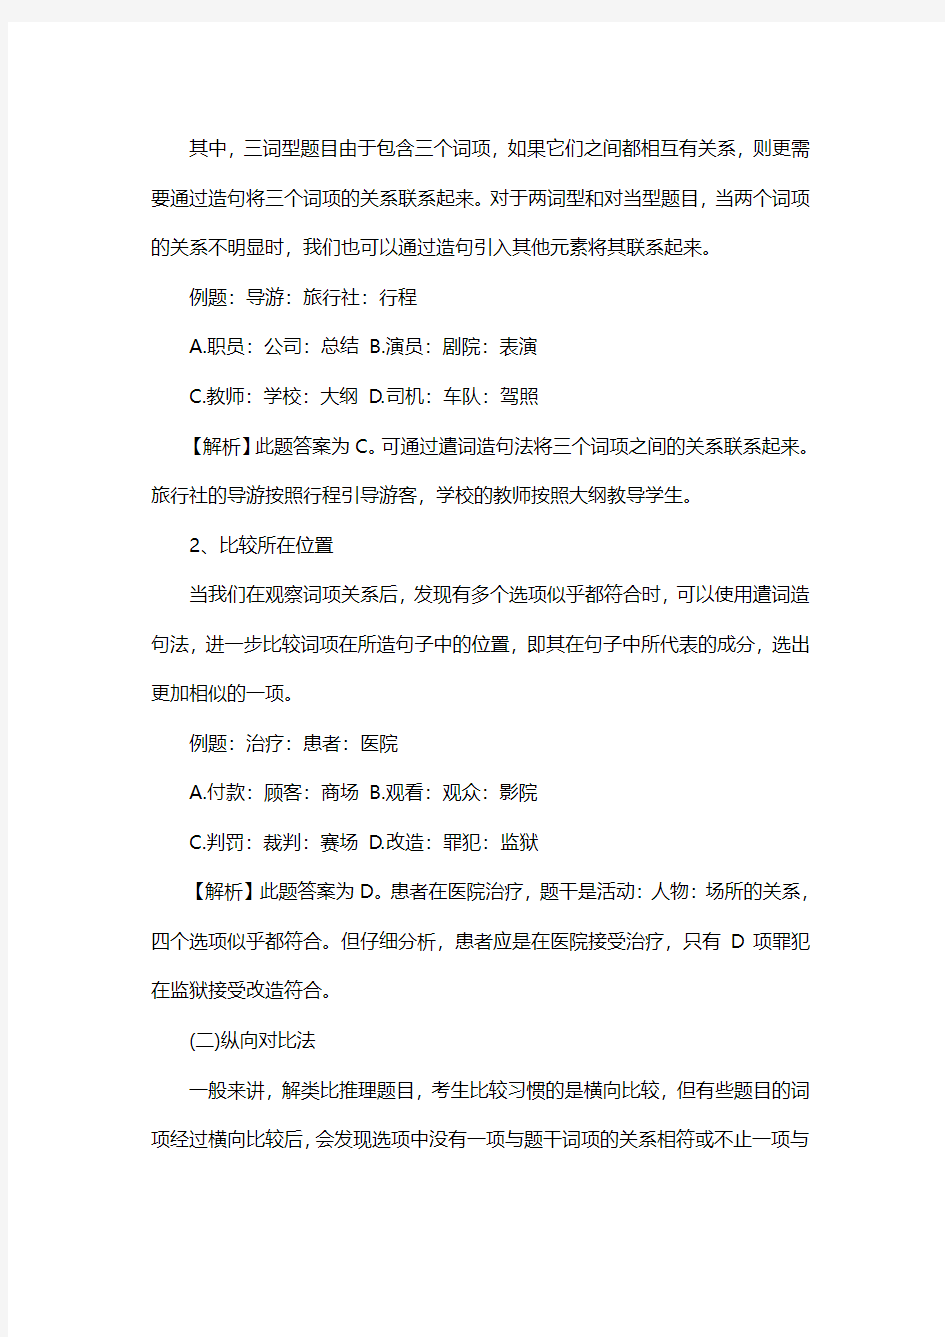 2015年黑龙江省直事业单位考试参考资料